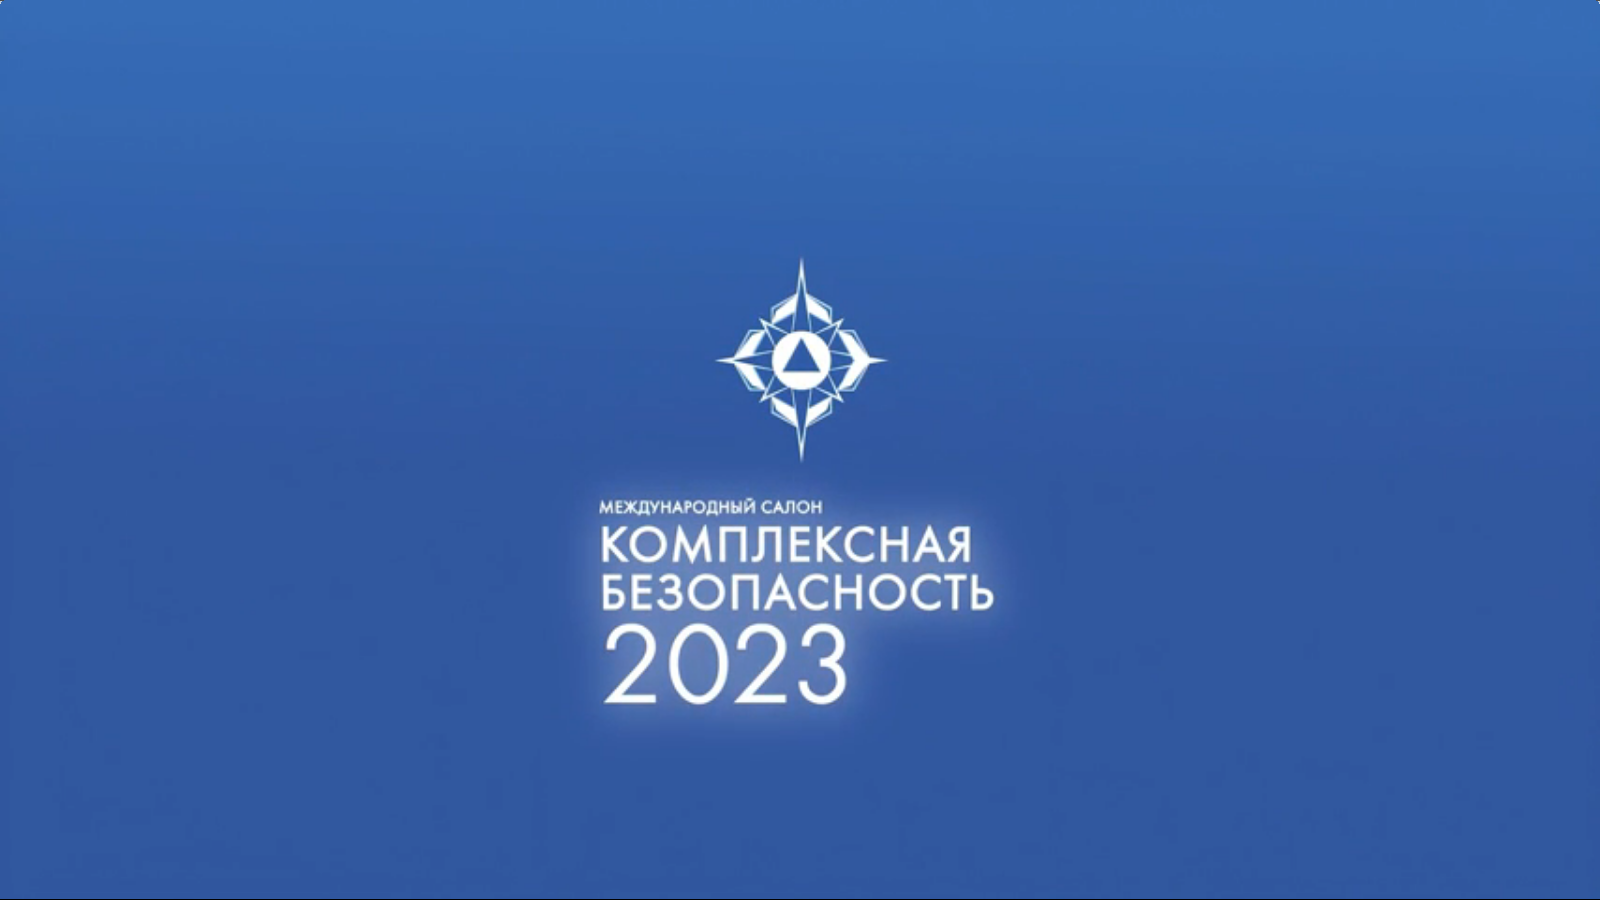 Комплексная безопасность 2023 Международный салон. Выставка комплексная безопасность 2023. Комплексная безопасность 2023 Ногинск. Комплексная безопасность 2023 МЧС.